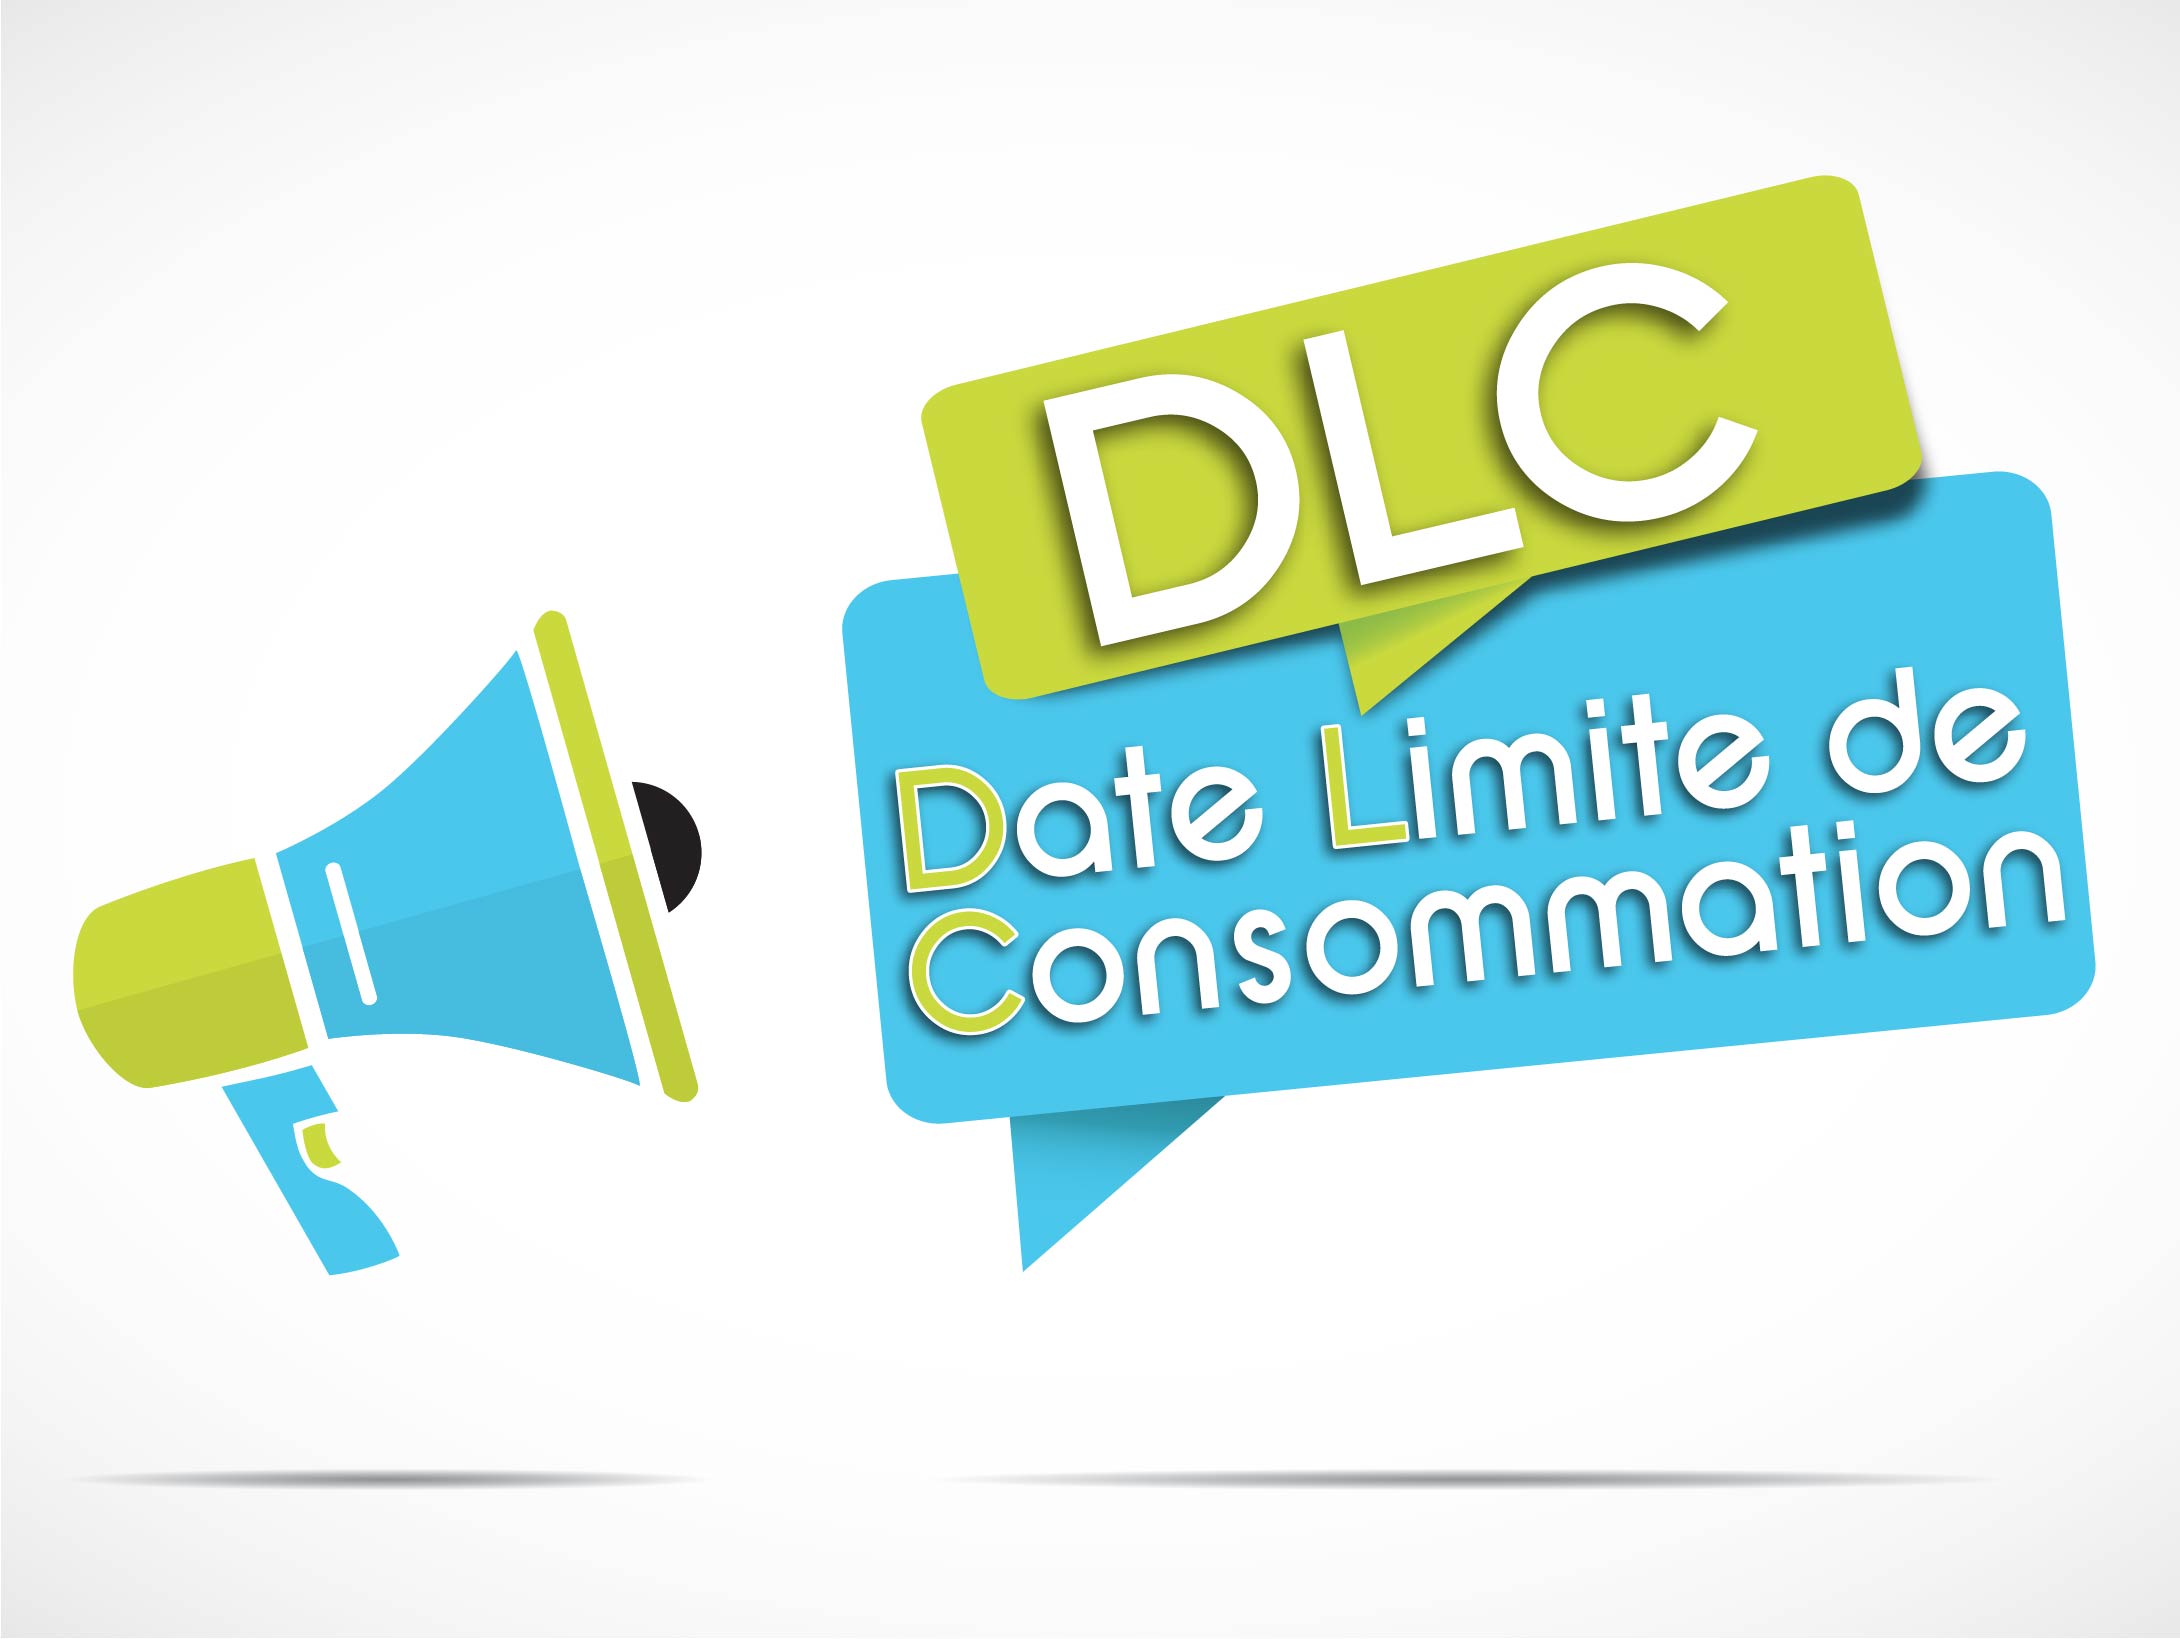 DLC- Date limite de consommation